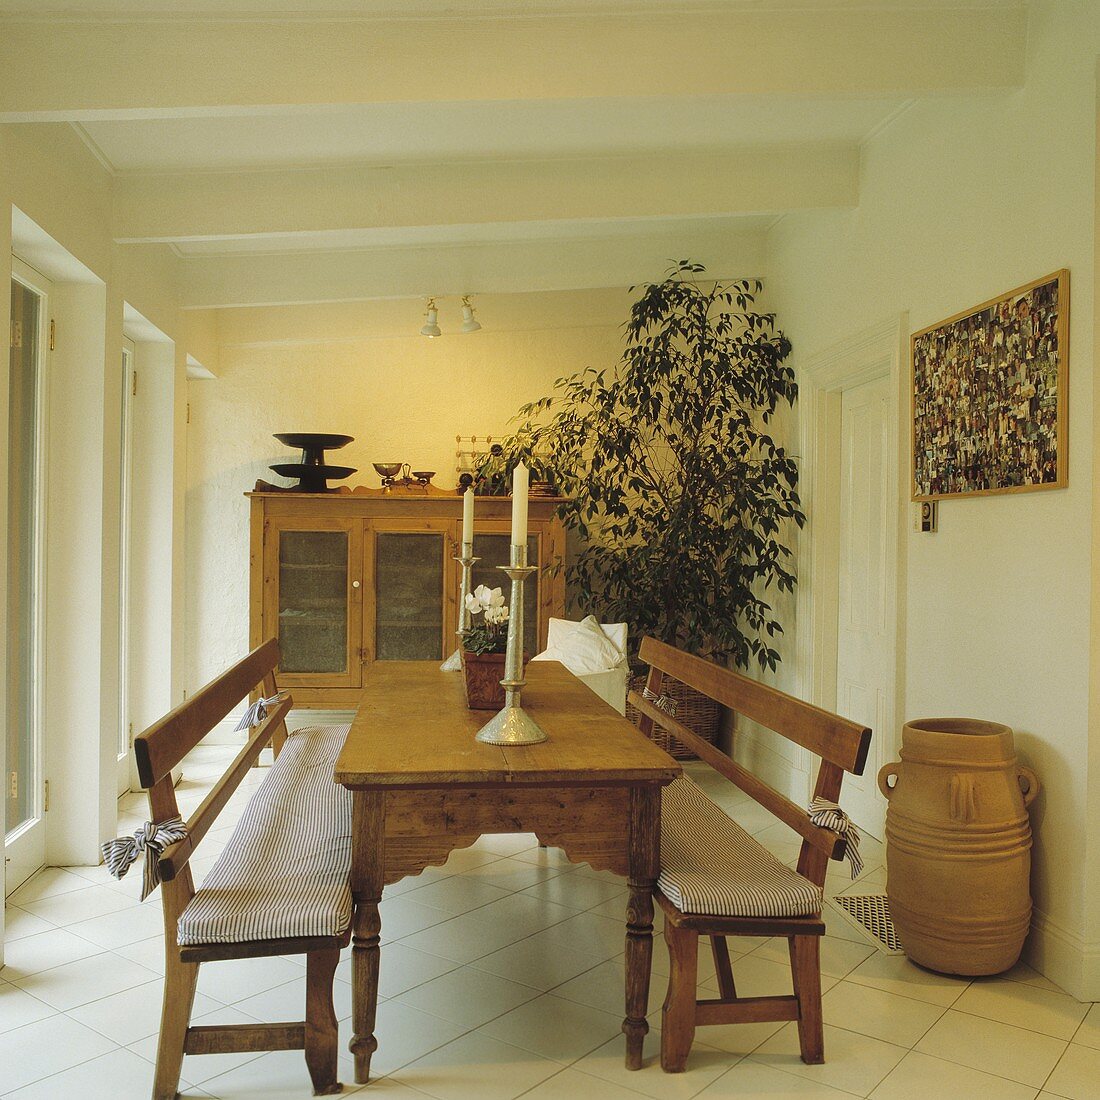 Antiker rechteckiger Tisch und Bänke aus Kiefernholz in einem weissen Esszimmer mit grosser Zimmerpflanze